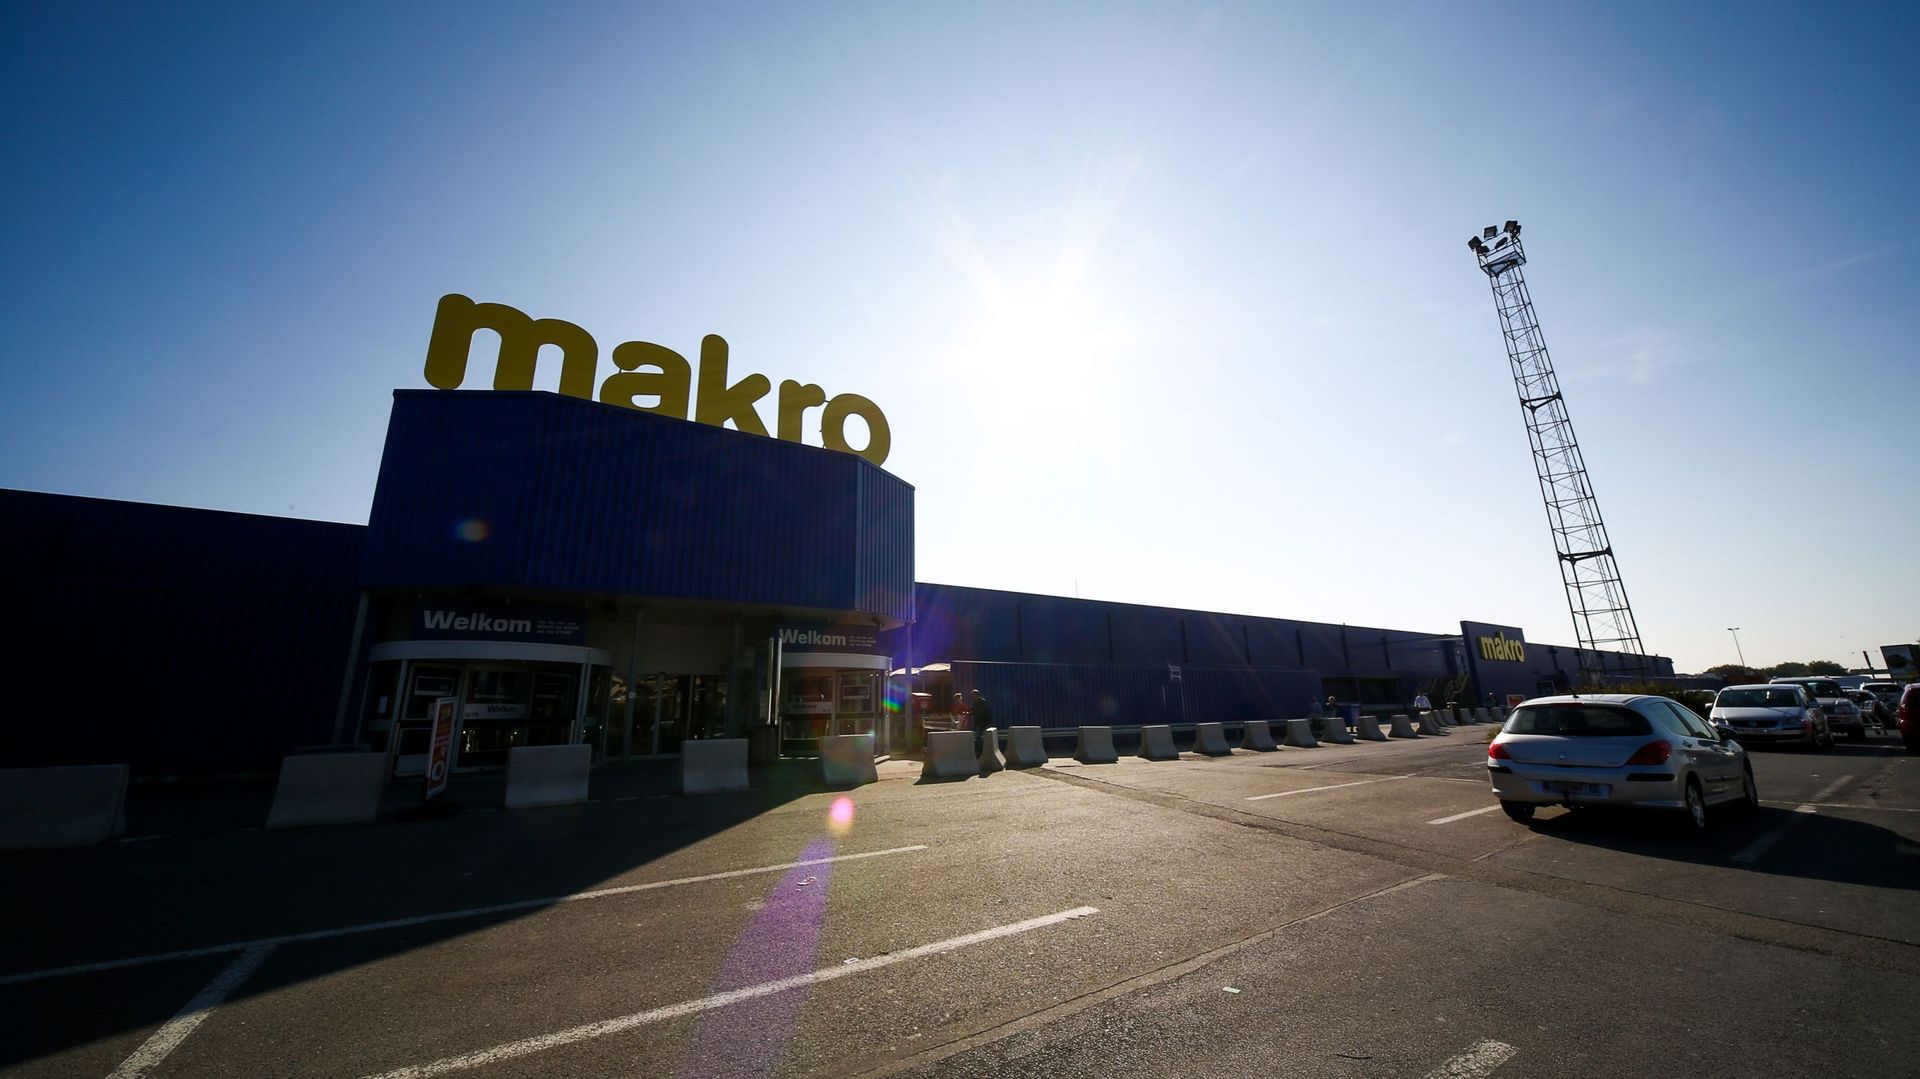 Makro: on pourrait en savoir plus mercredi sur l'avenir des magasins Metro et Makro en Belgique